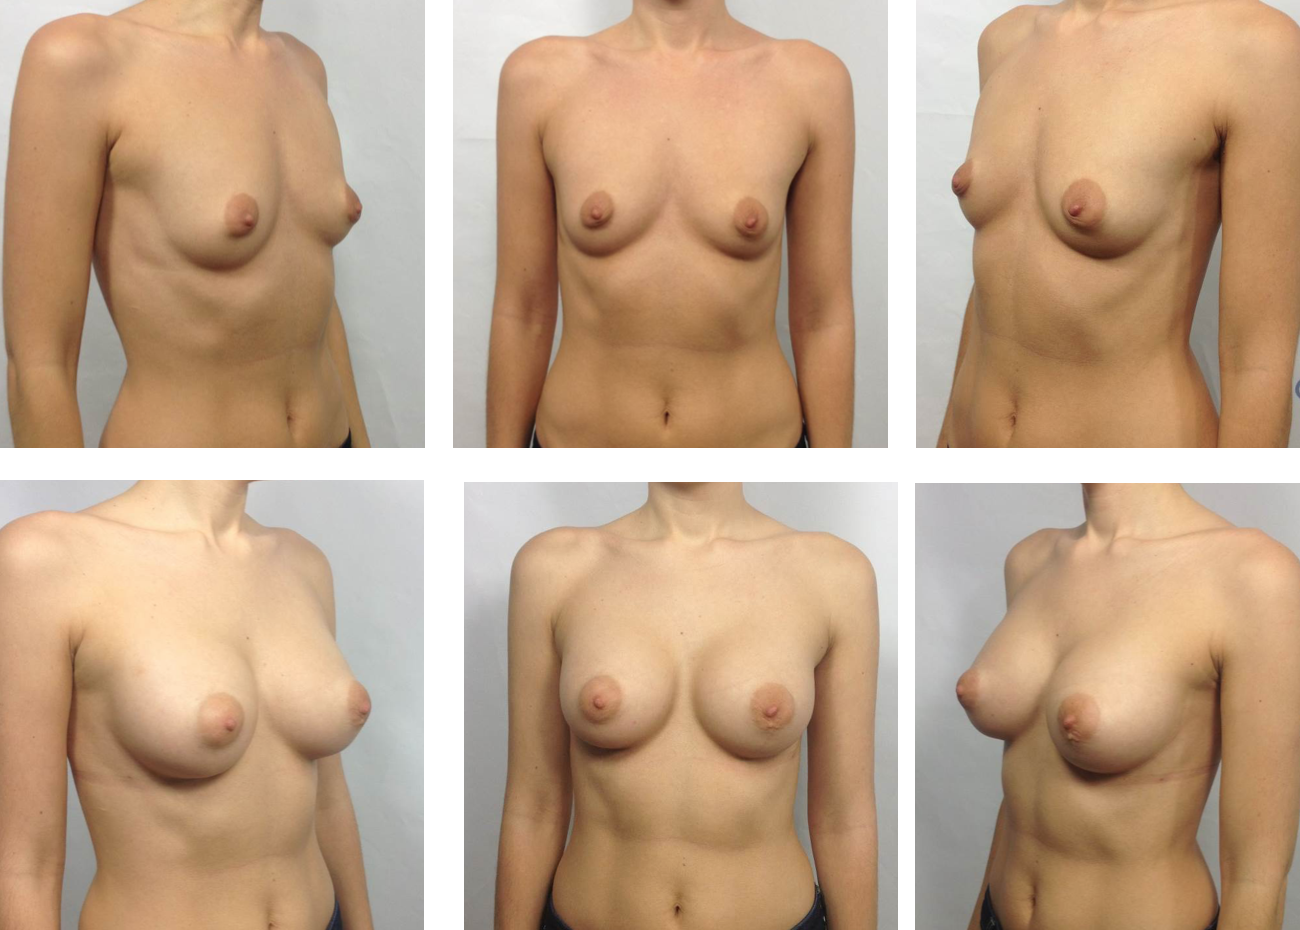 показать формы груди у женщин фото 114